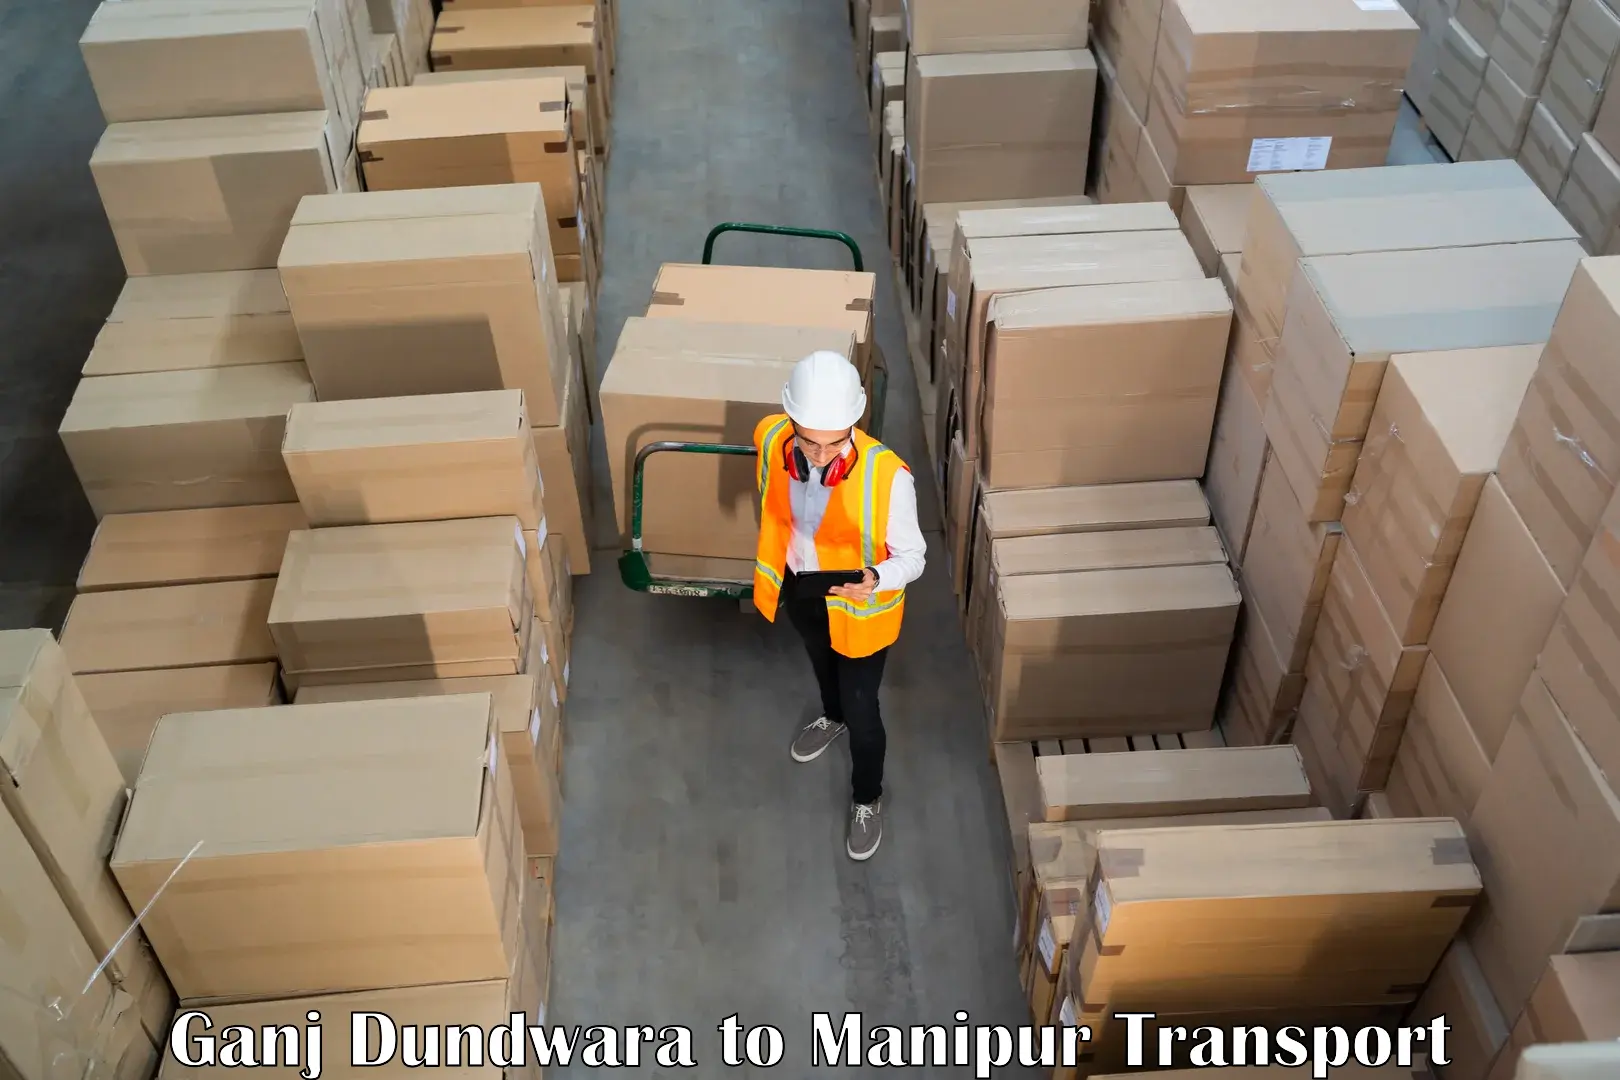 Truck transport companies in India Ganj Dundwara to Manipur